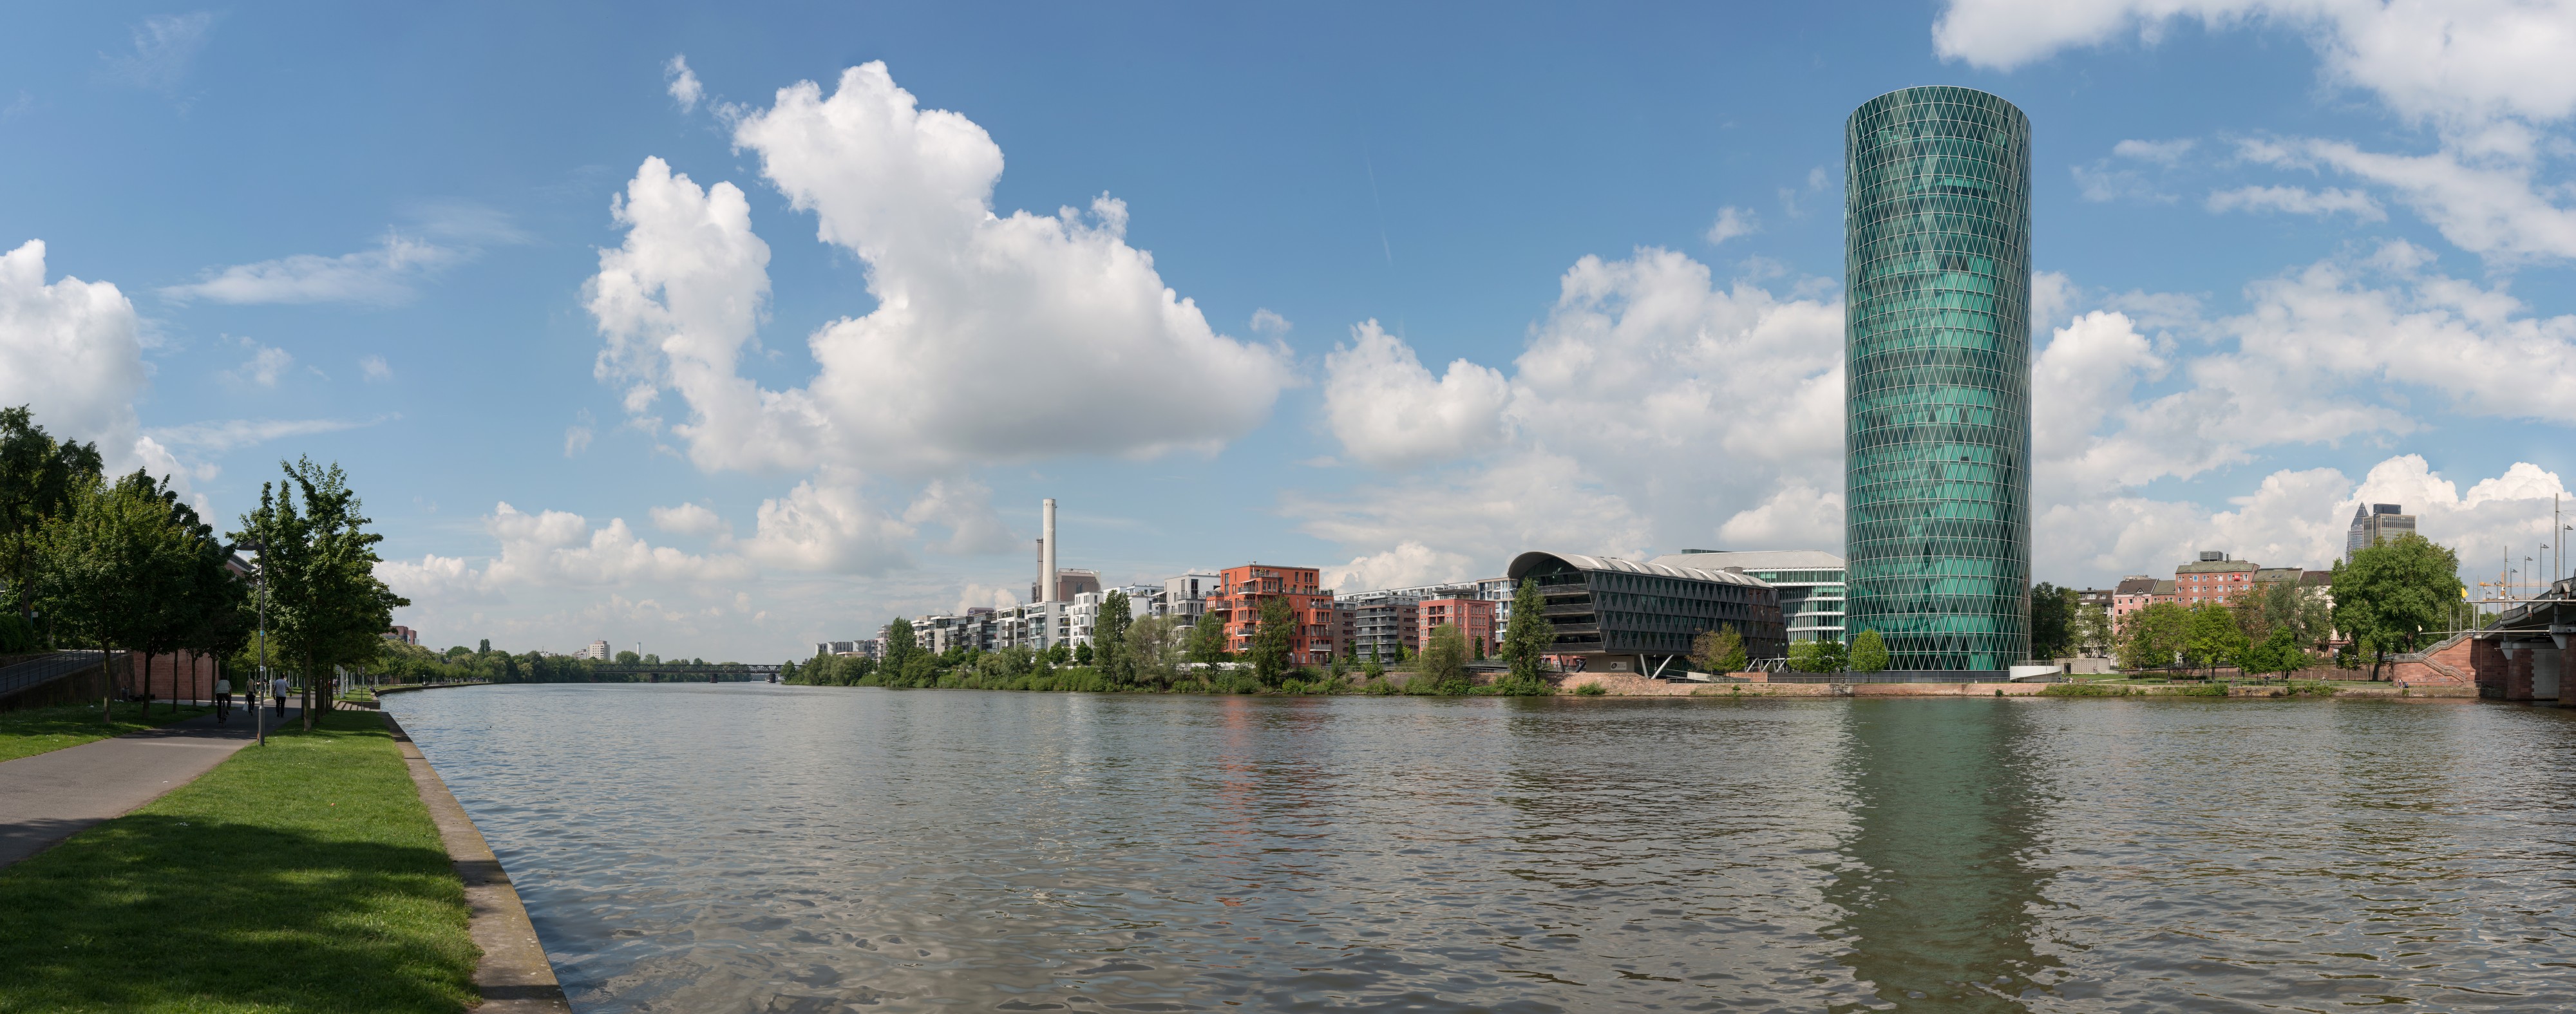 Westhafen, Frankfurt, Southeast view 20170514 3